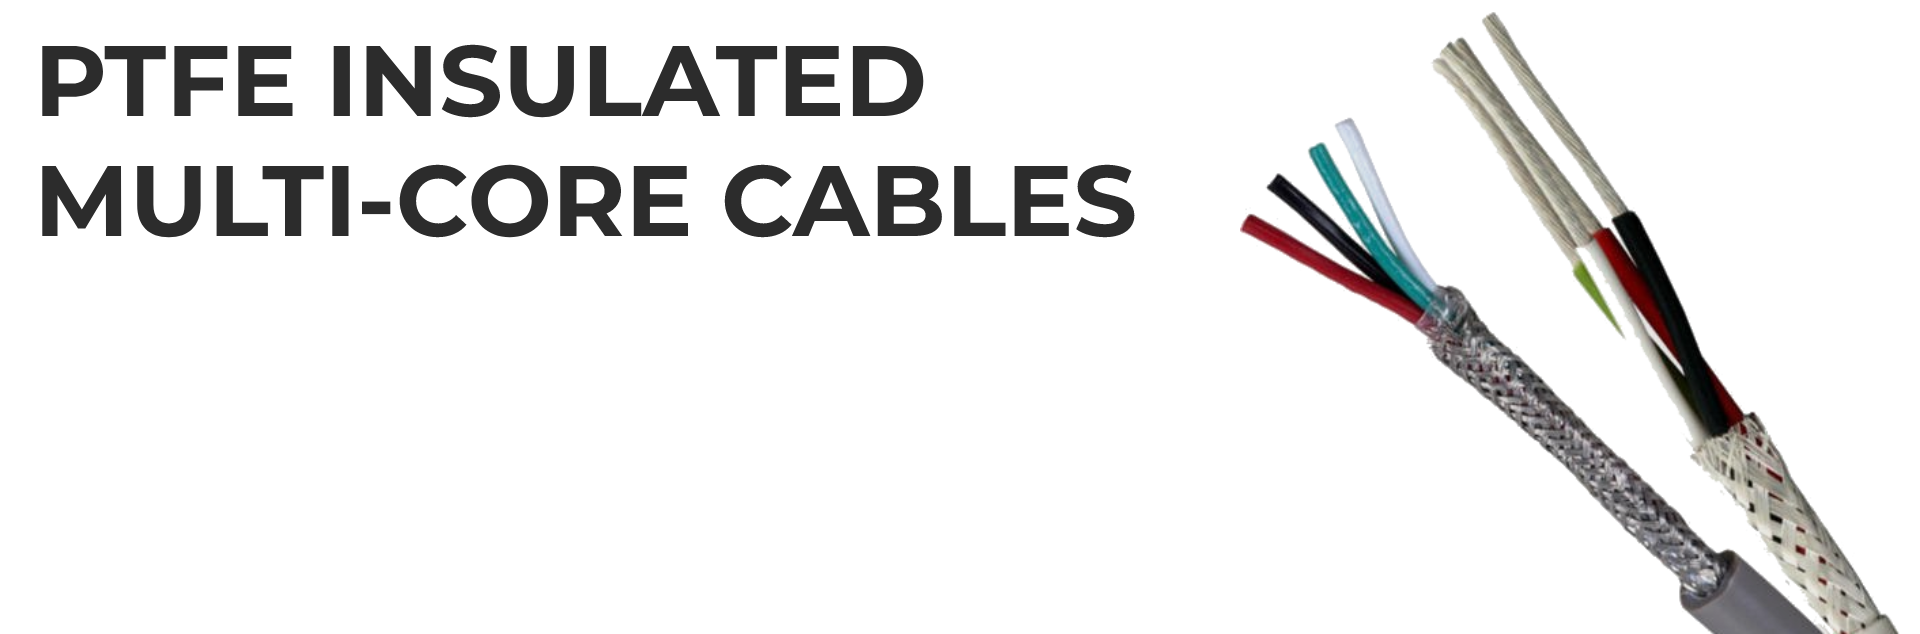 Cable multi core vs single core Single core